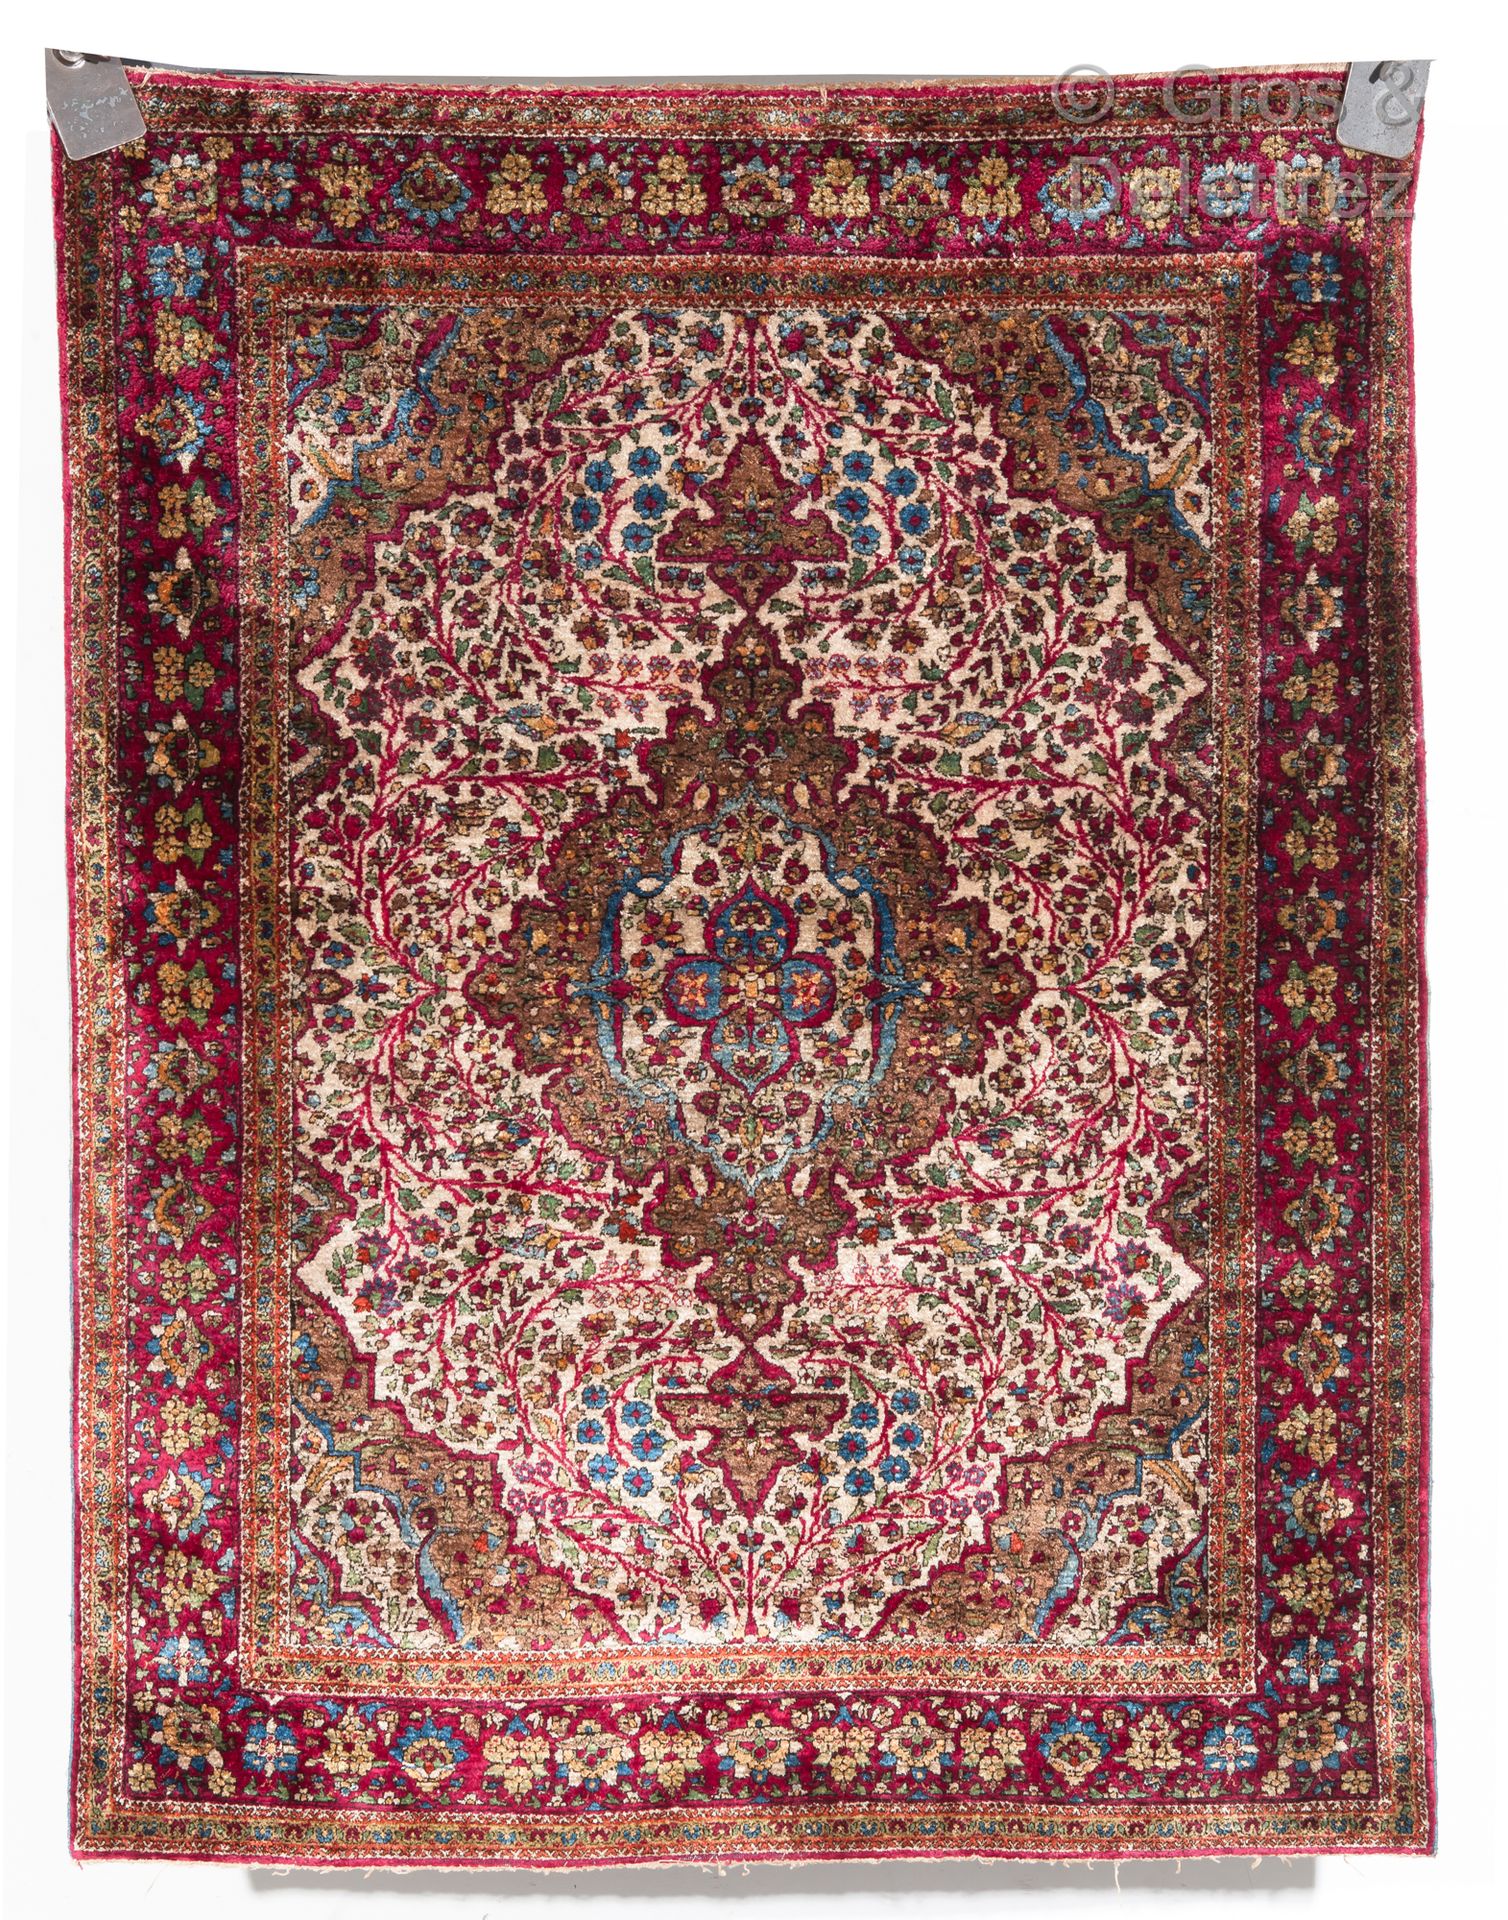 Null An antique Kirman silk rug, Iran

A fine antique Kirman (Kerman) silk rug, &hellip;